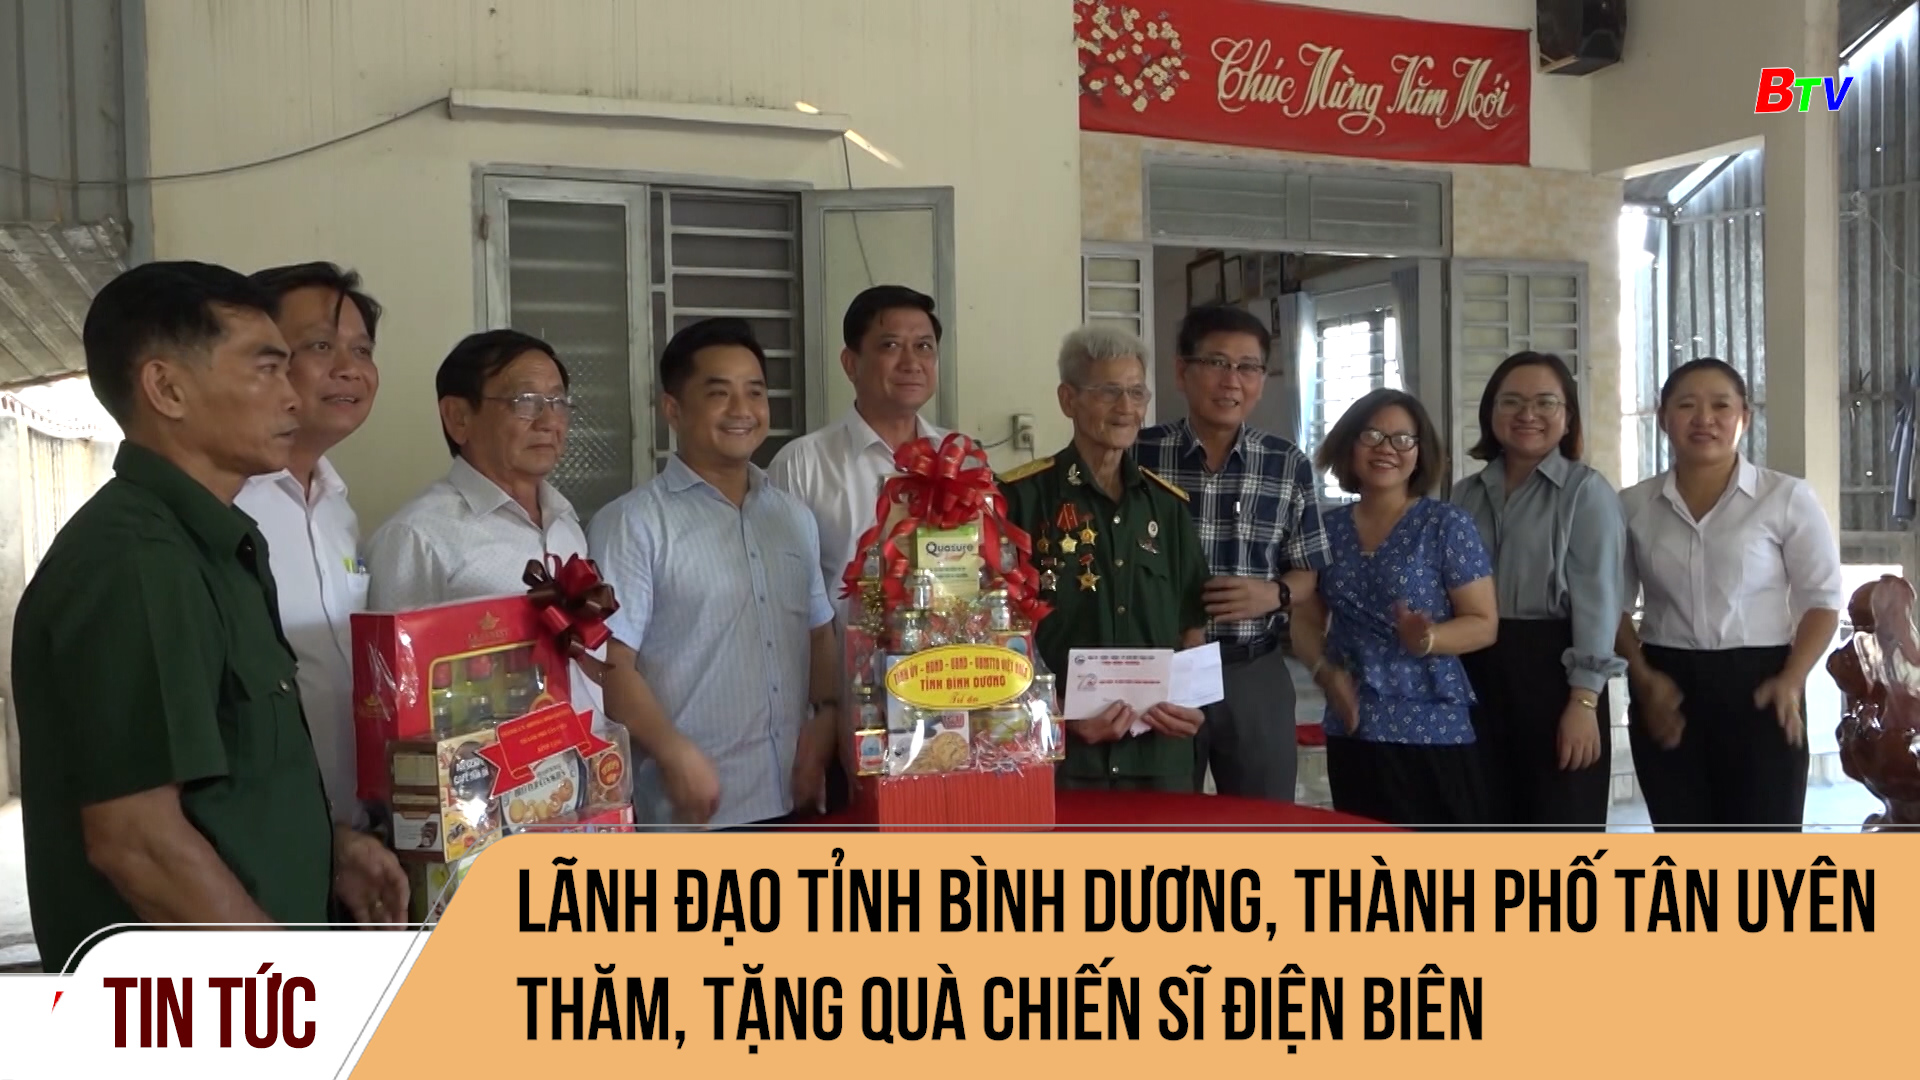 Lãnh đạo tỉnh Bình Dương, thành phố Tân Uyên thăm, tặng quà chiến sĩ Điện Biên	